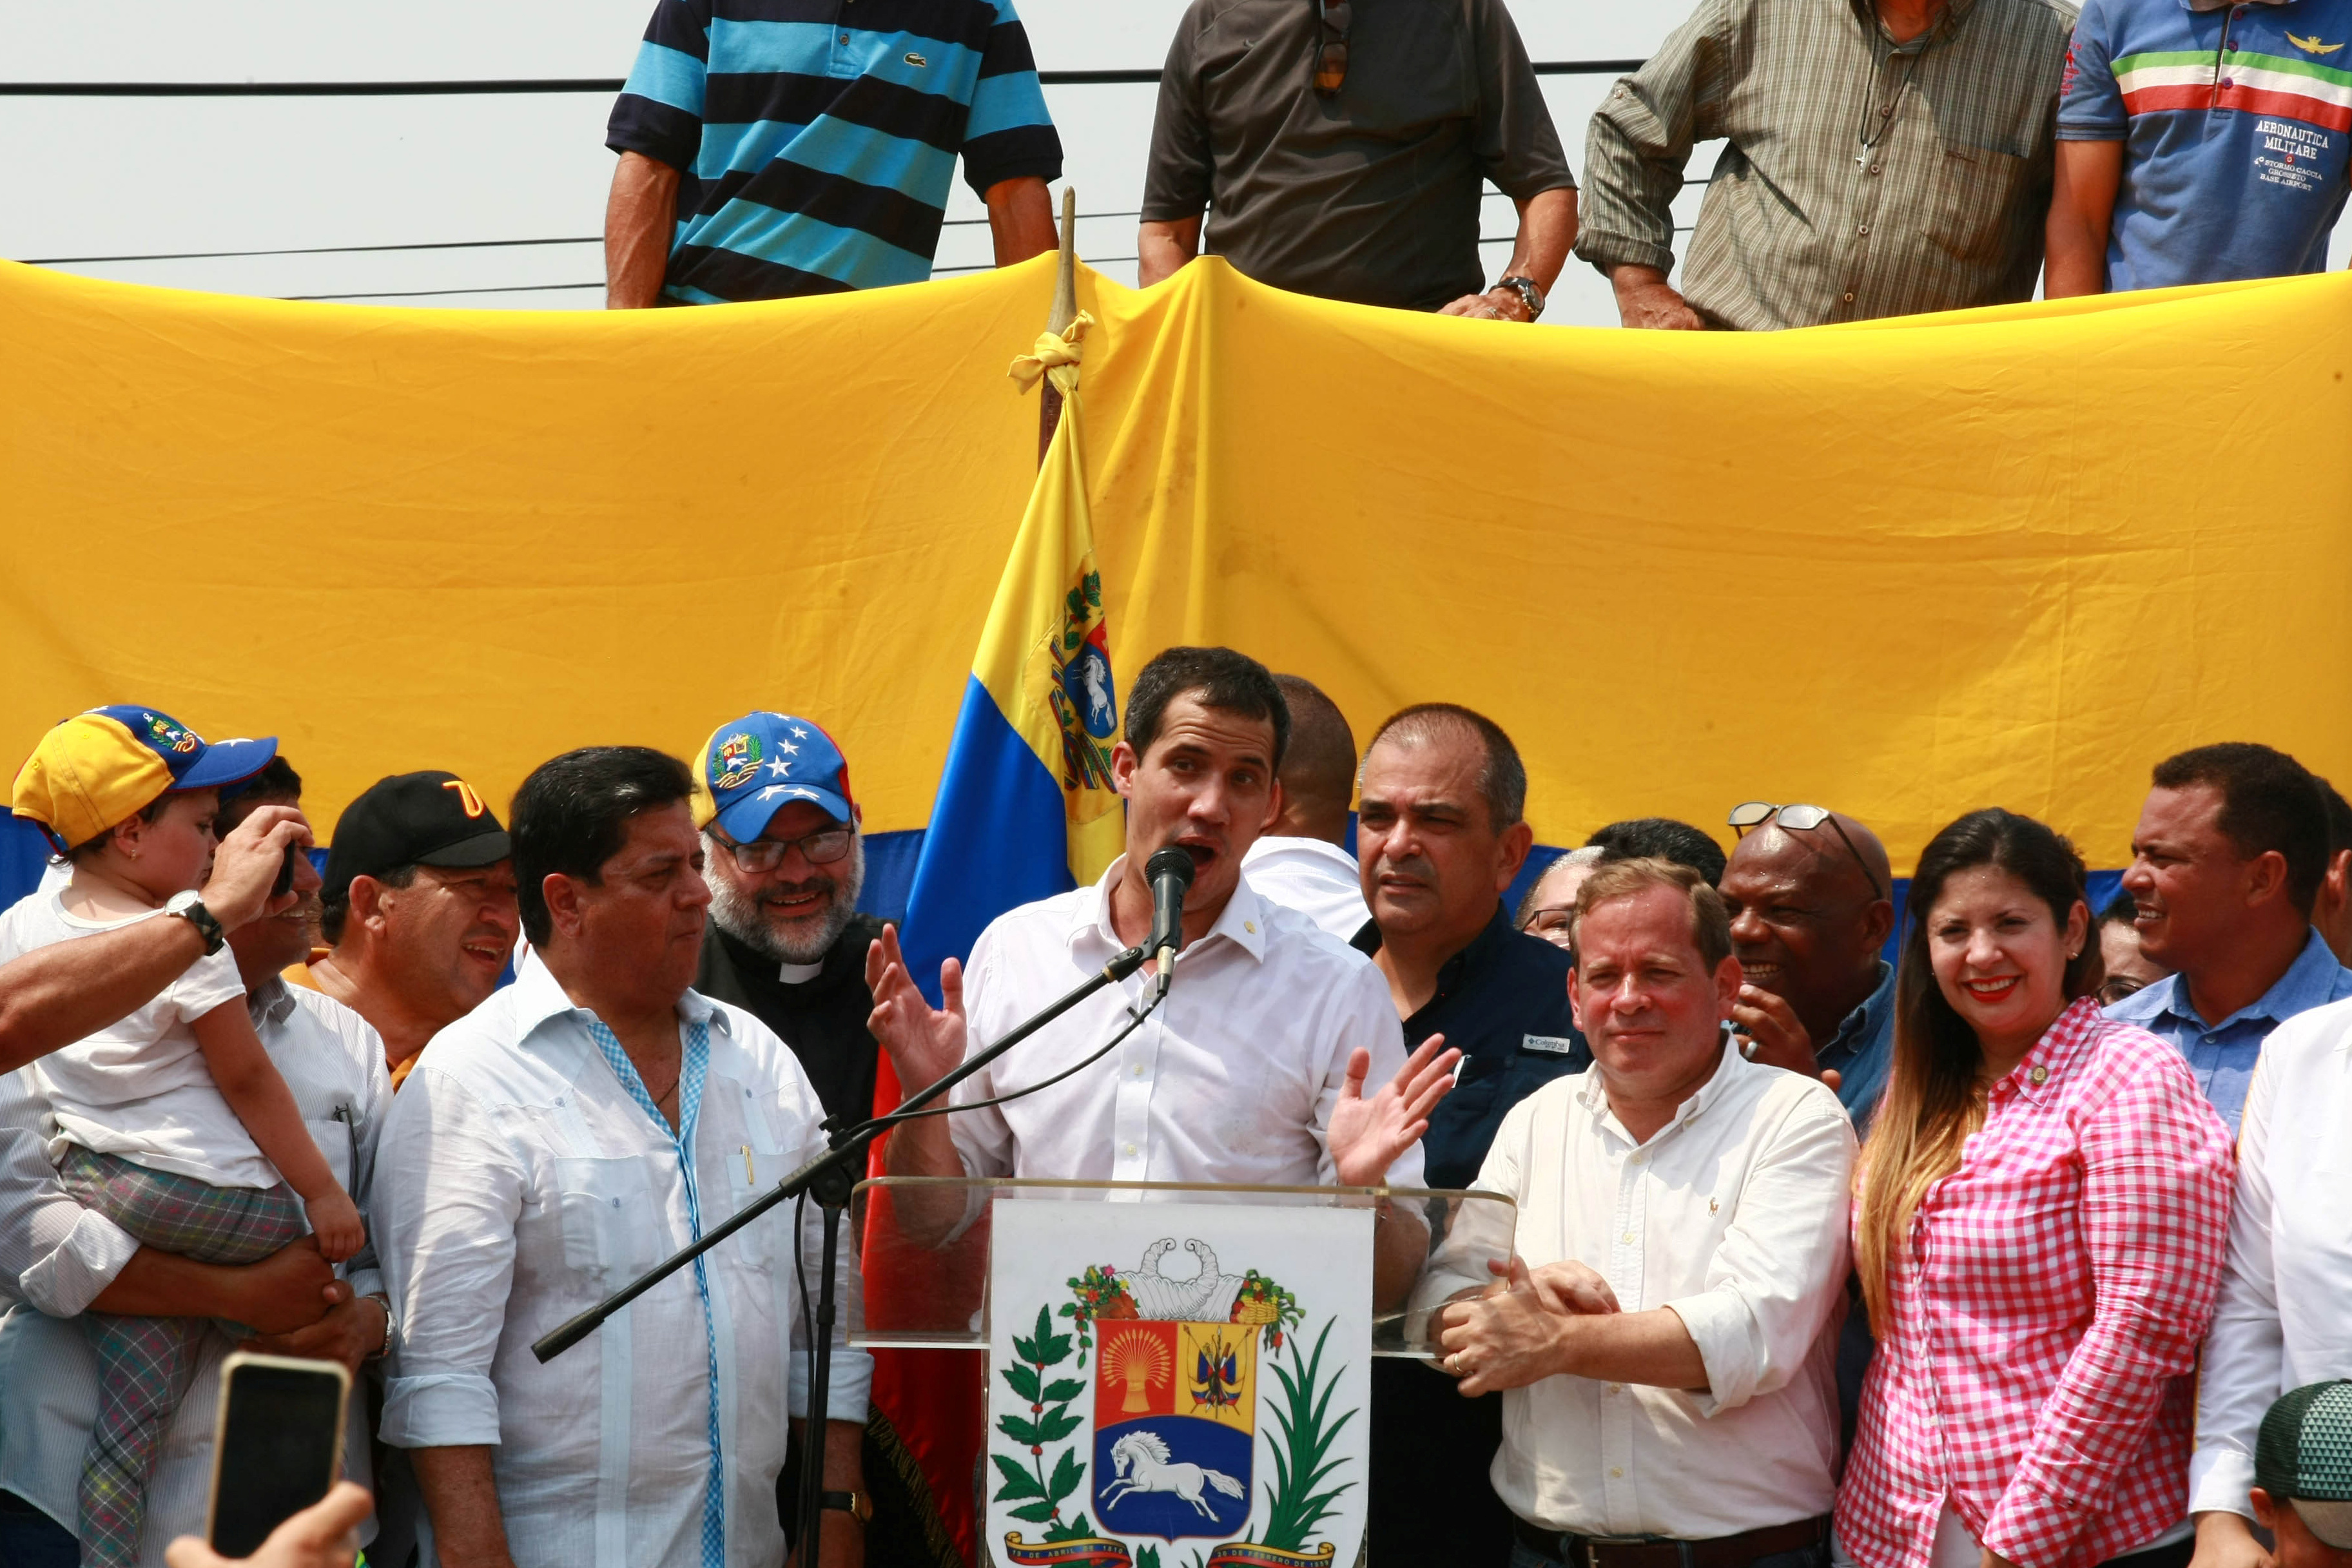 زعيم المعارضة الفنزويلية جوايدو يشارك في مظاهرة خلال زيارته لماراكايبو 24